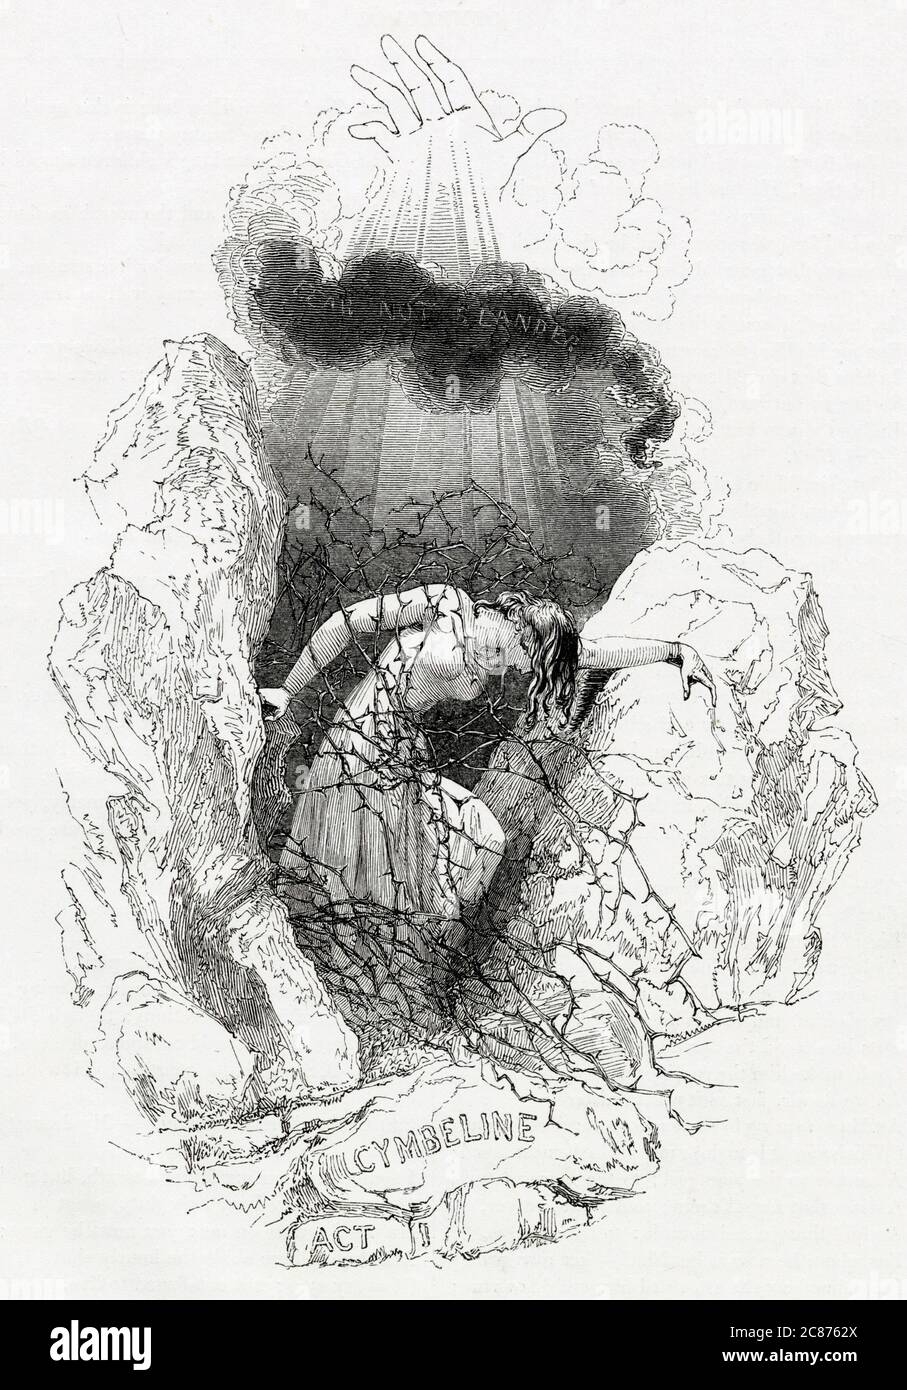 Illustrazione di Kenny Meadows a Cymbeline, di William Shakespeare. Illustrazione introduttiva all'atto i, che mostra Imogen che lotta attraverso rami spinoso. Data: 1840 Foto Stock